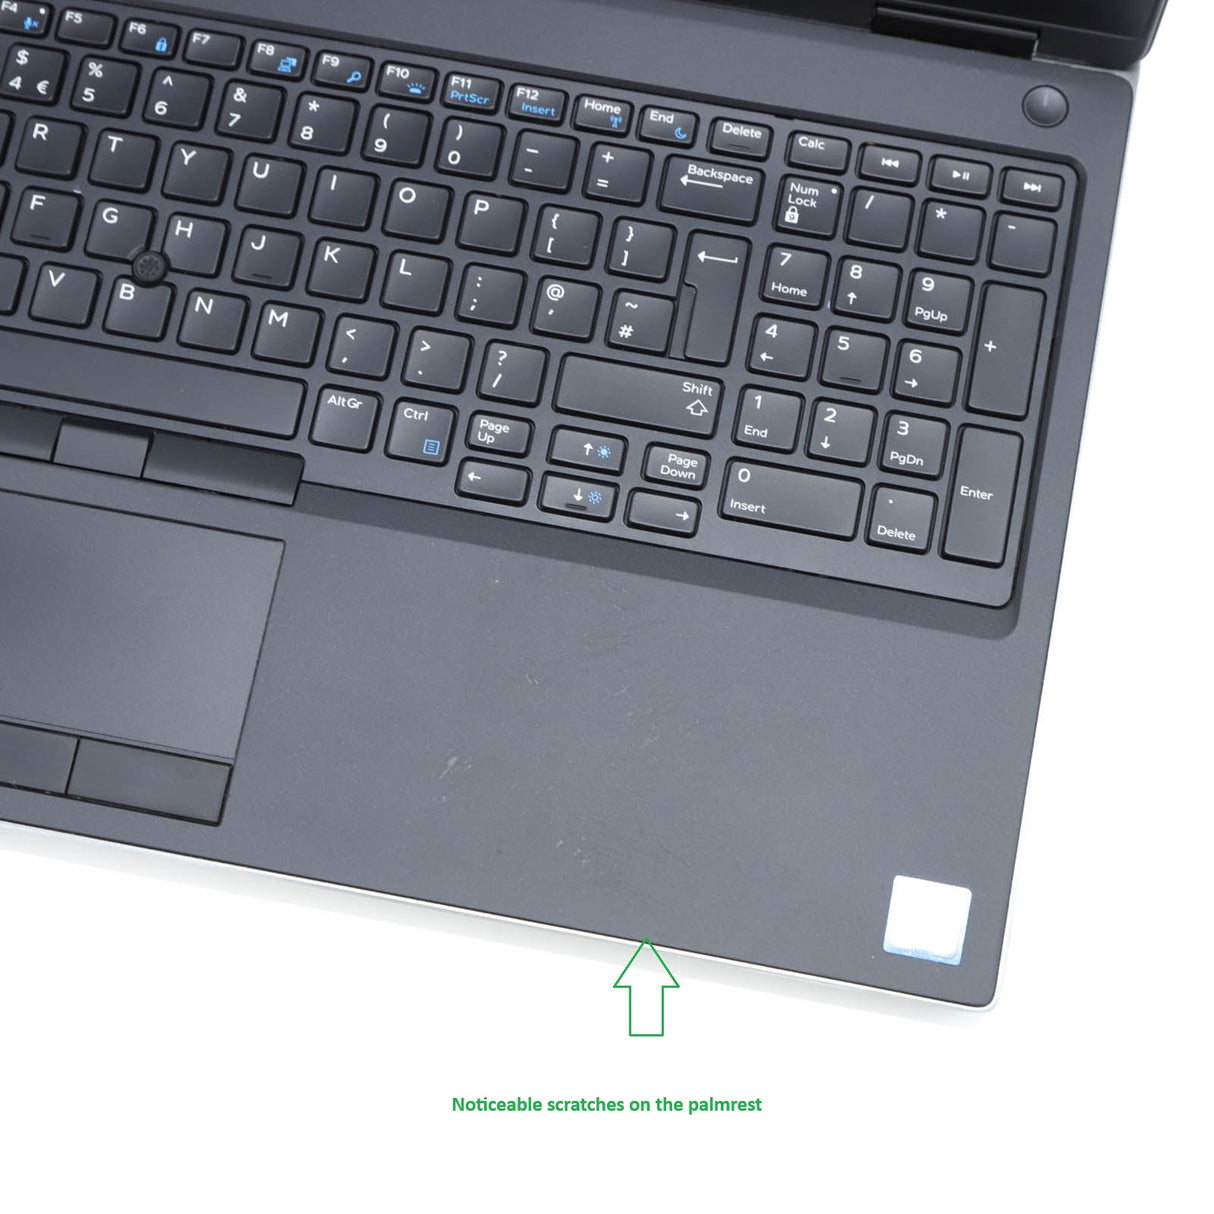 Dell Precision 7530 Laptop: Core i7, Quadro P2000, 16GB RAM, 1TB SSD, Warranty - GreenGreenStore